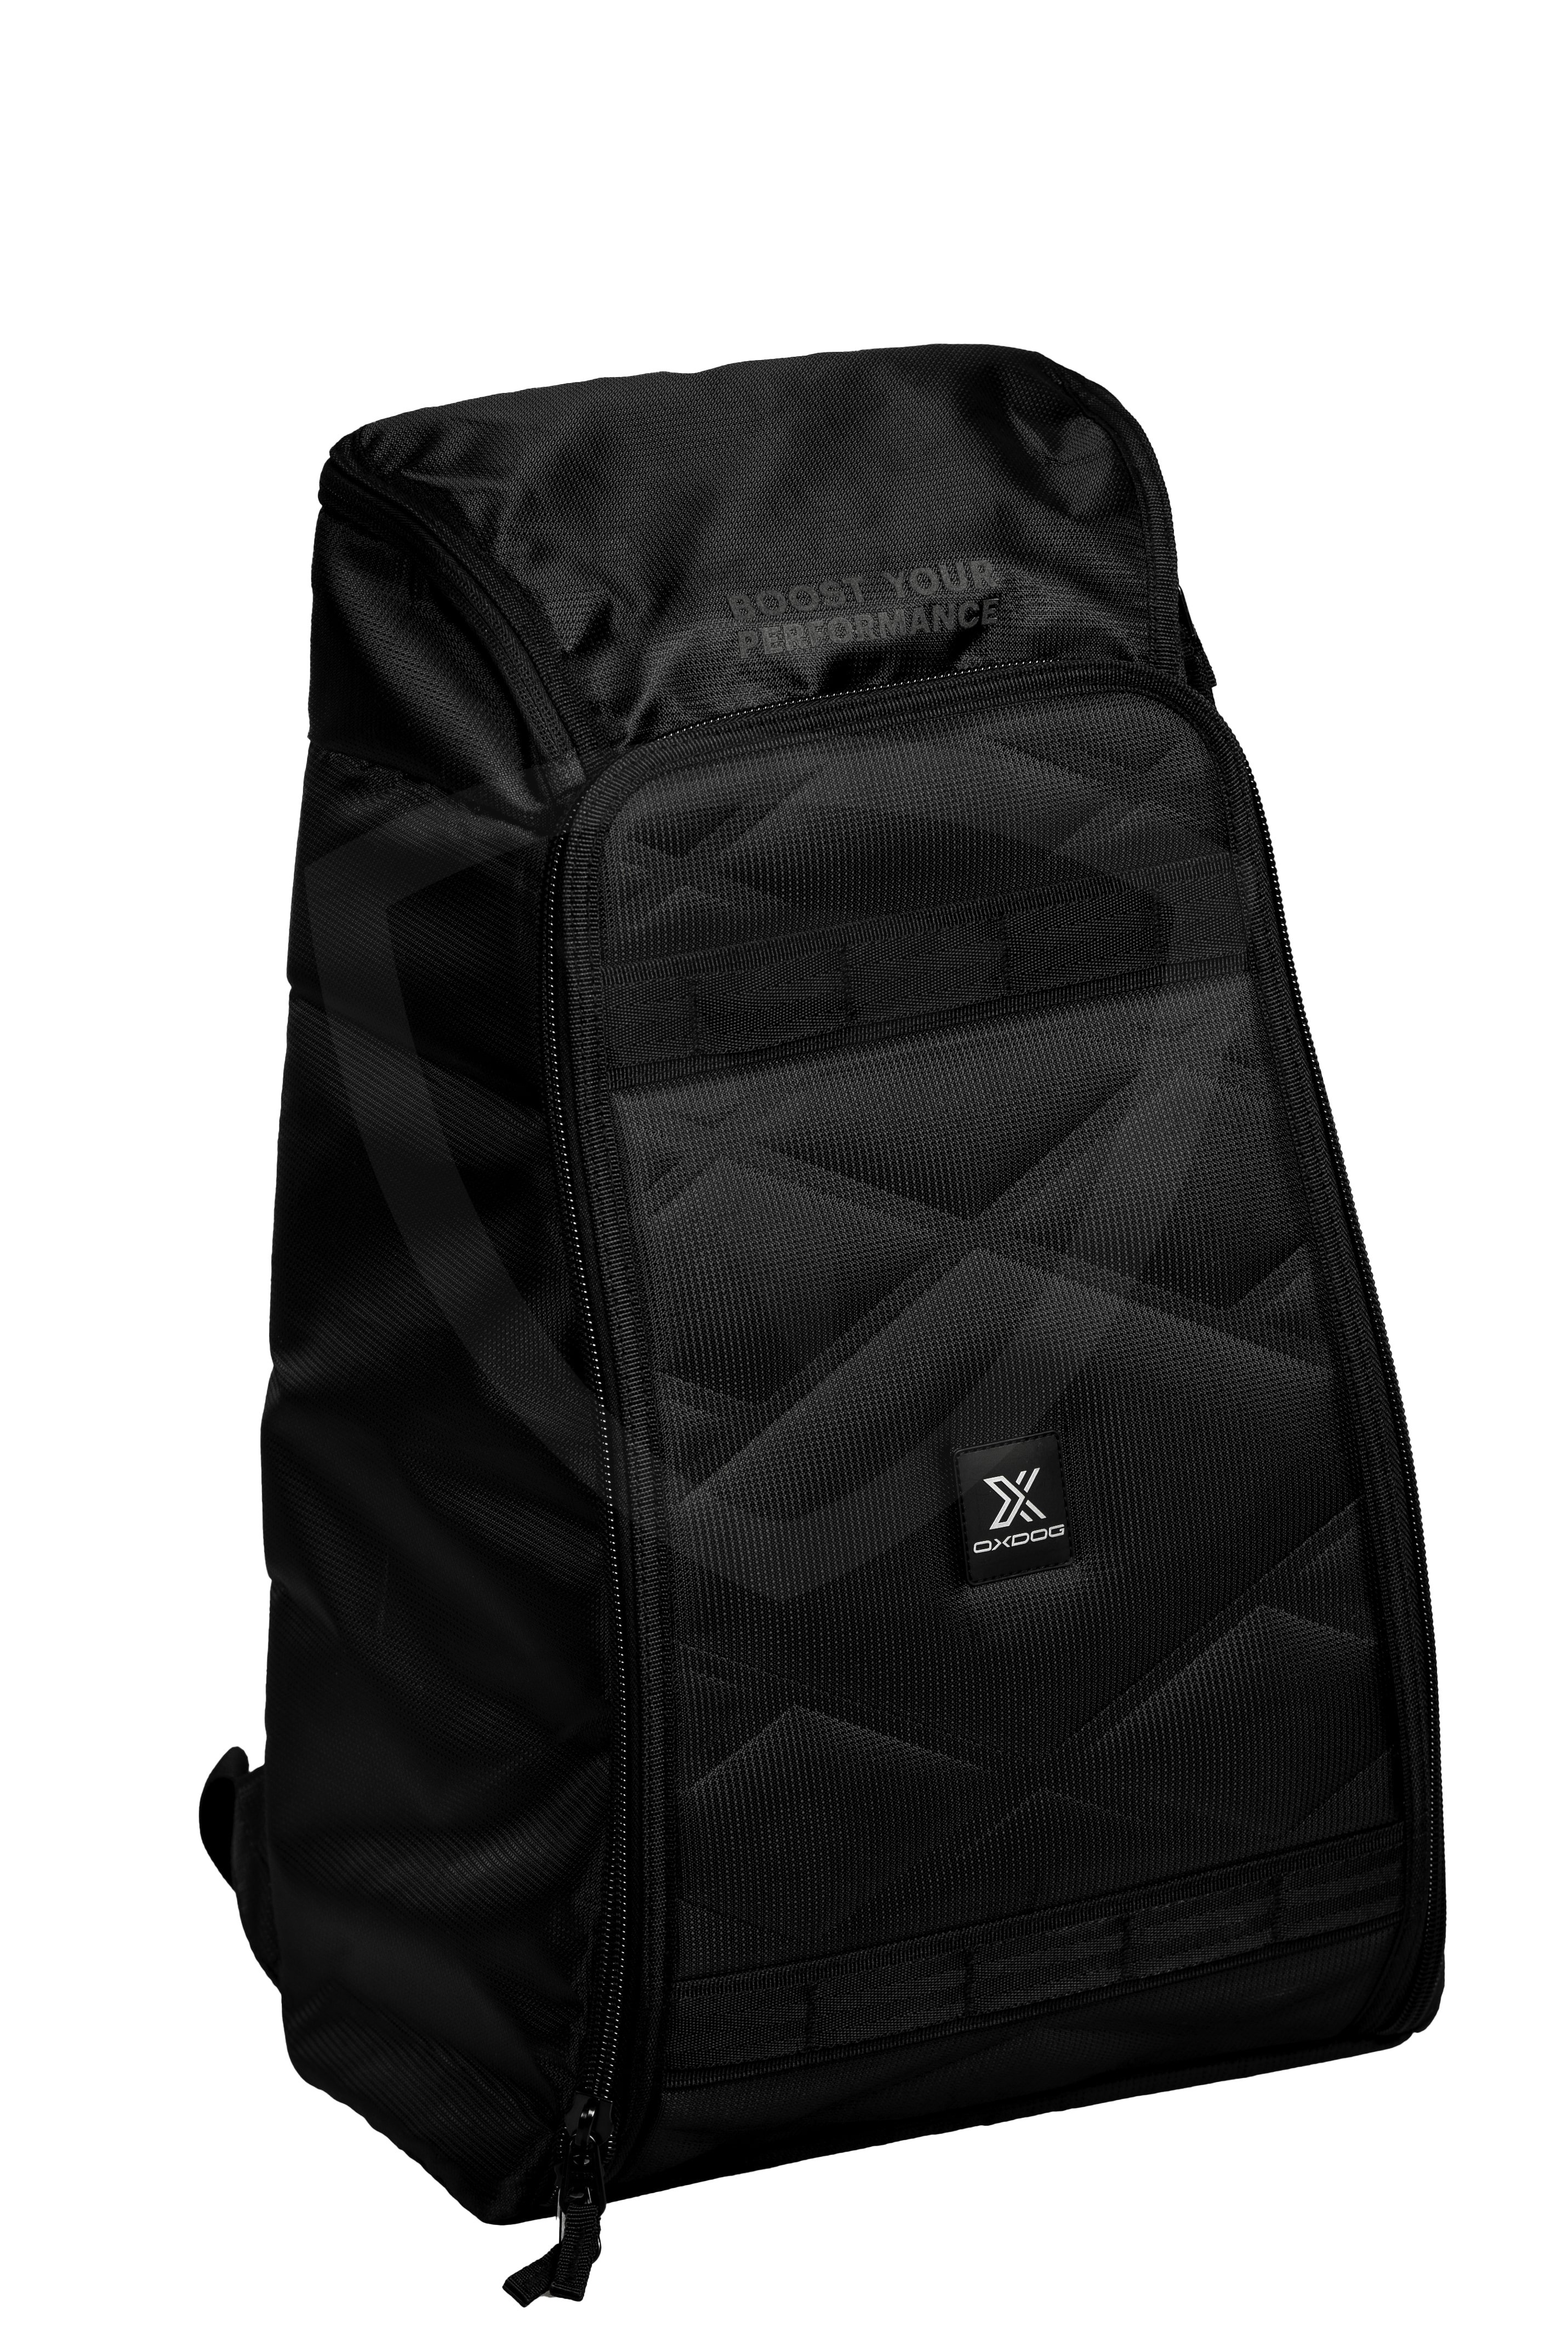 Oxdog Box Backpack černá